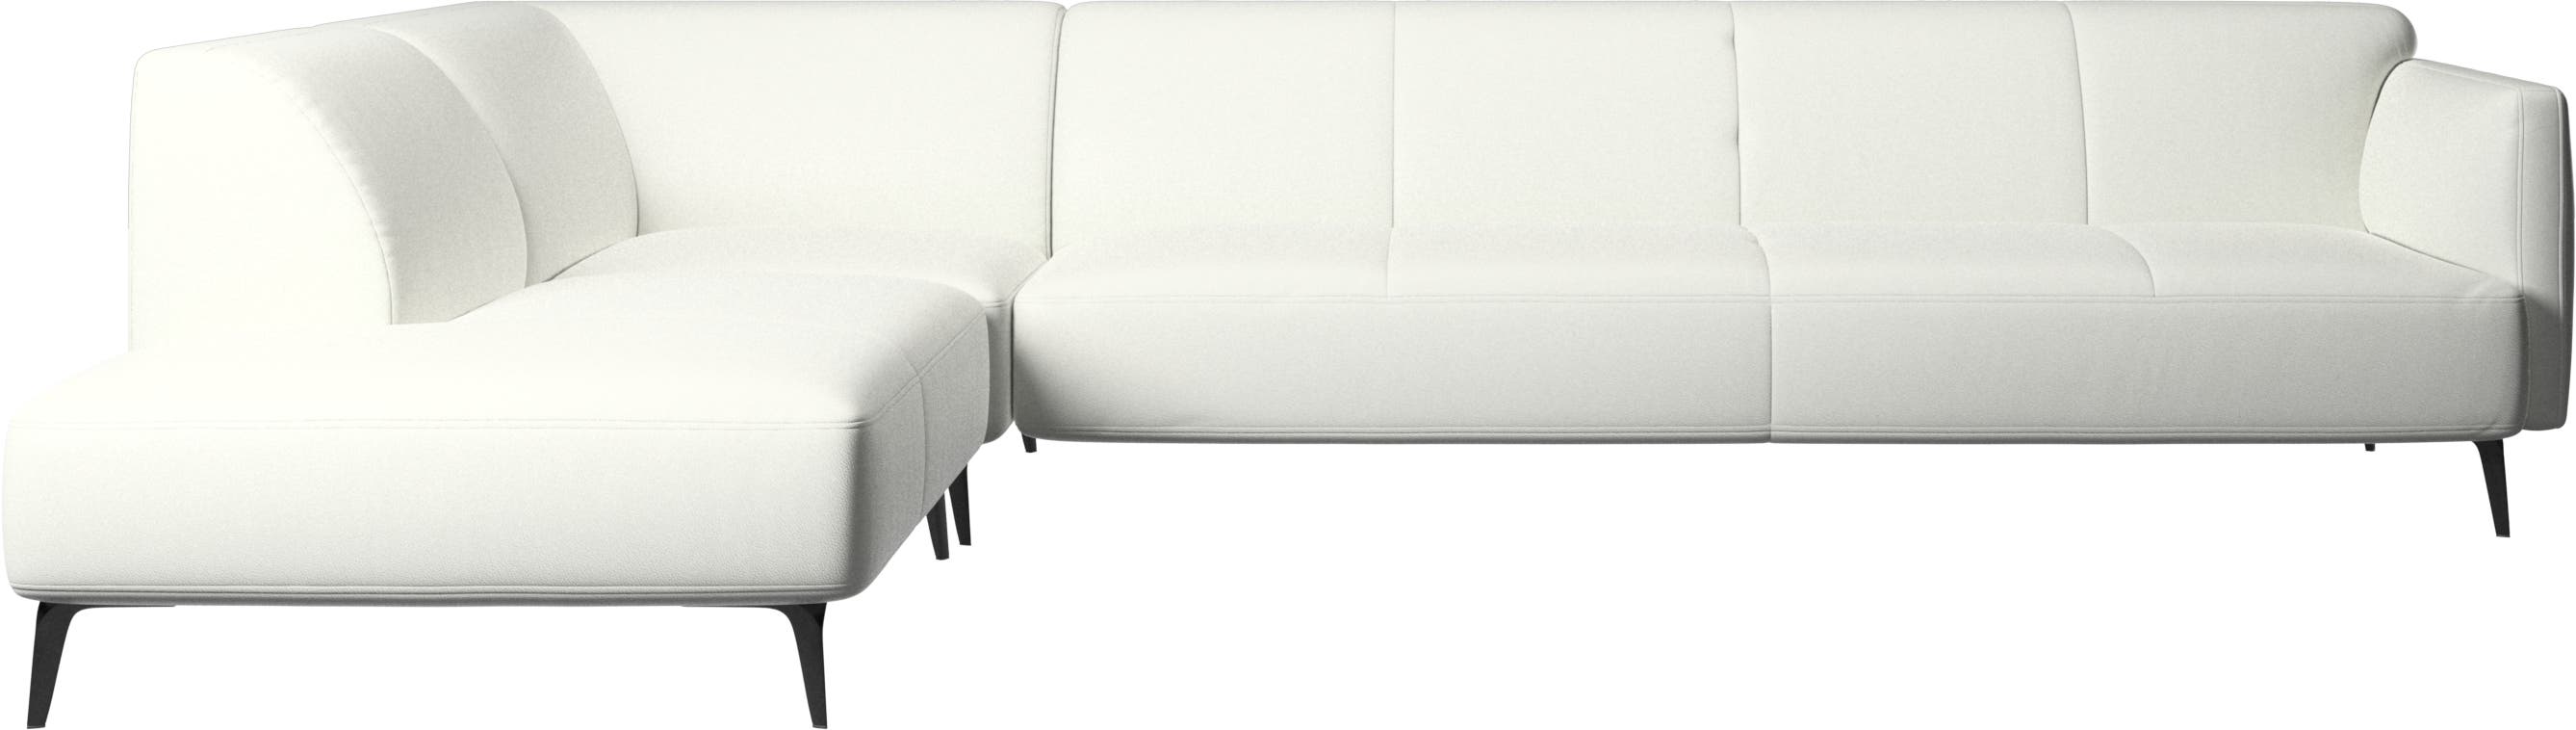 Canapé d'angle Modena avec module chaise longue